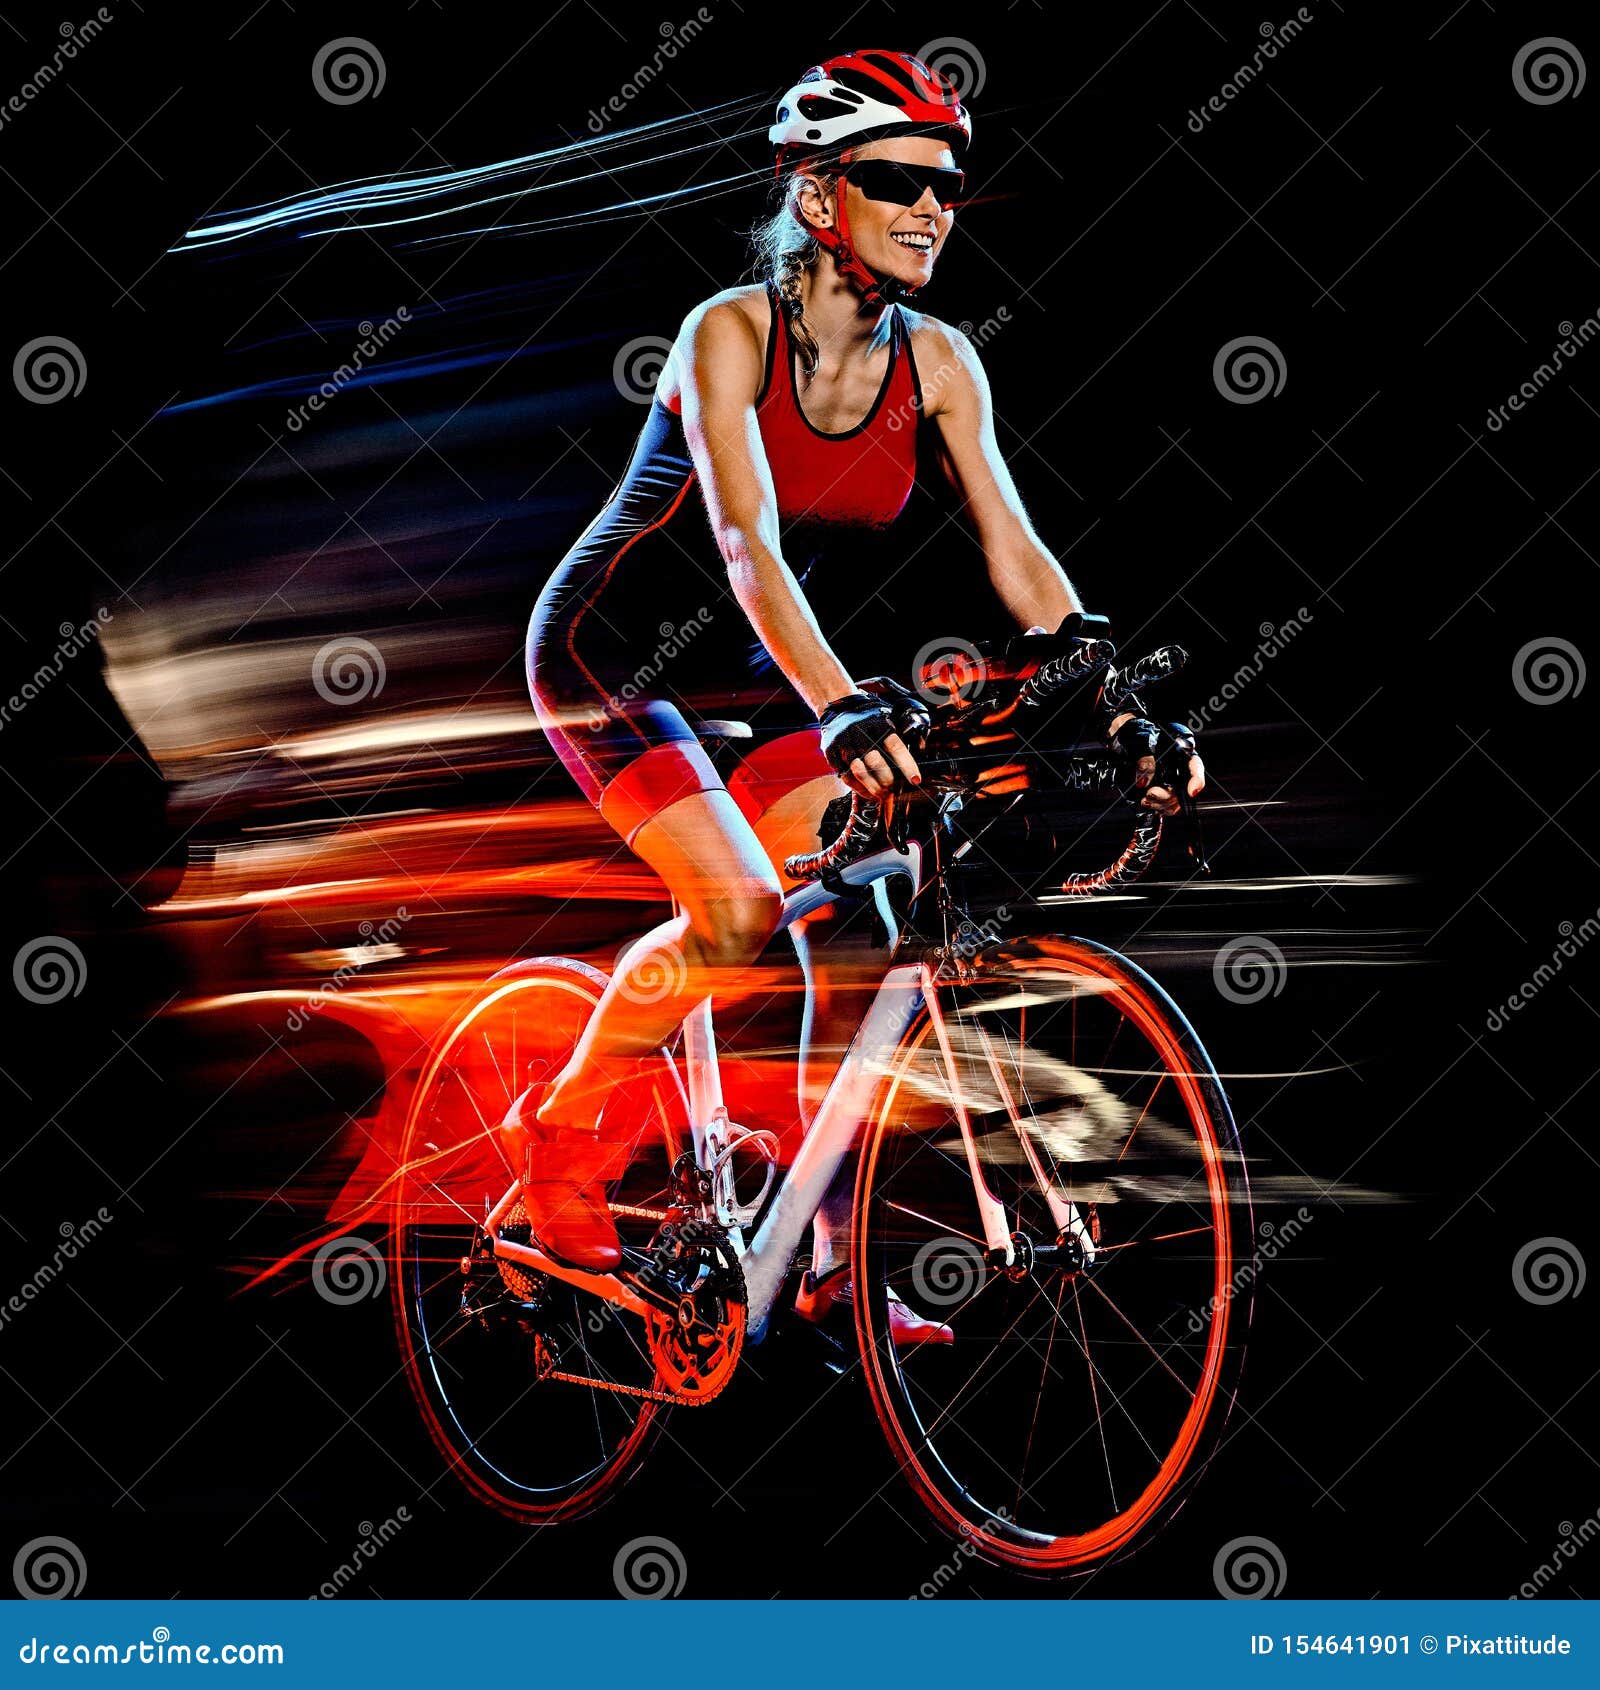 woman triathlon triathlete cyclist cycling  black background